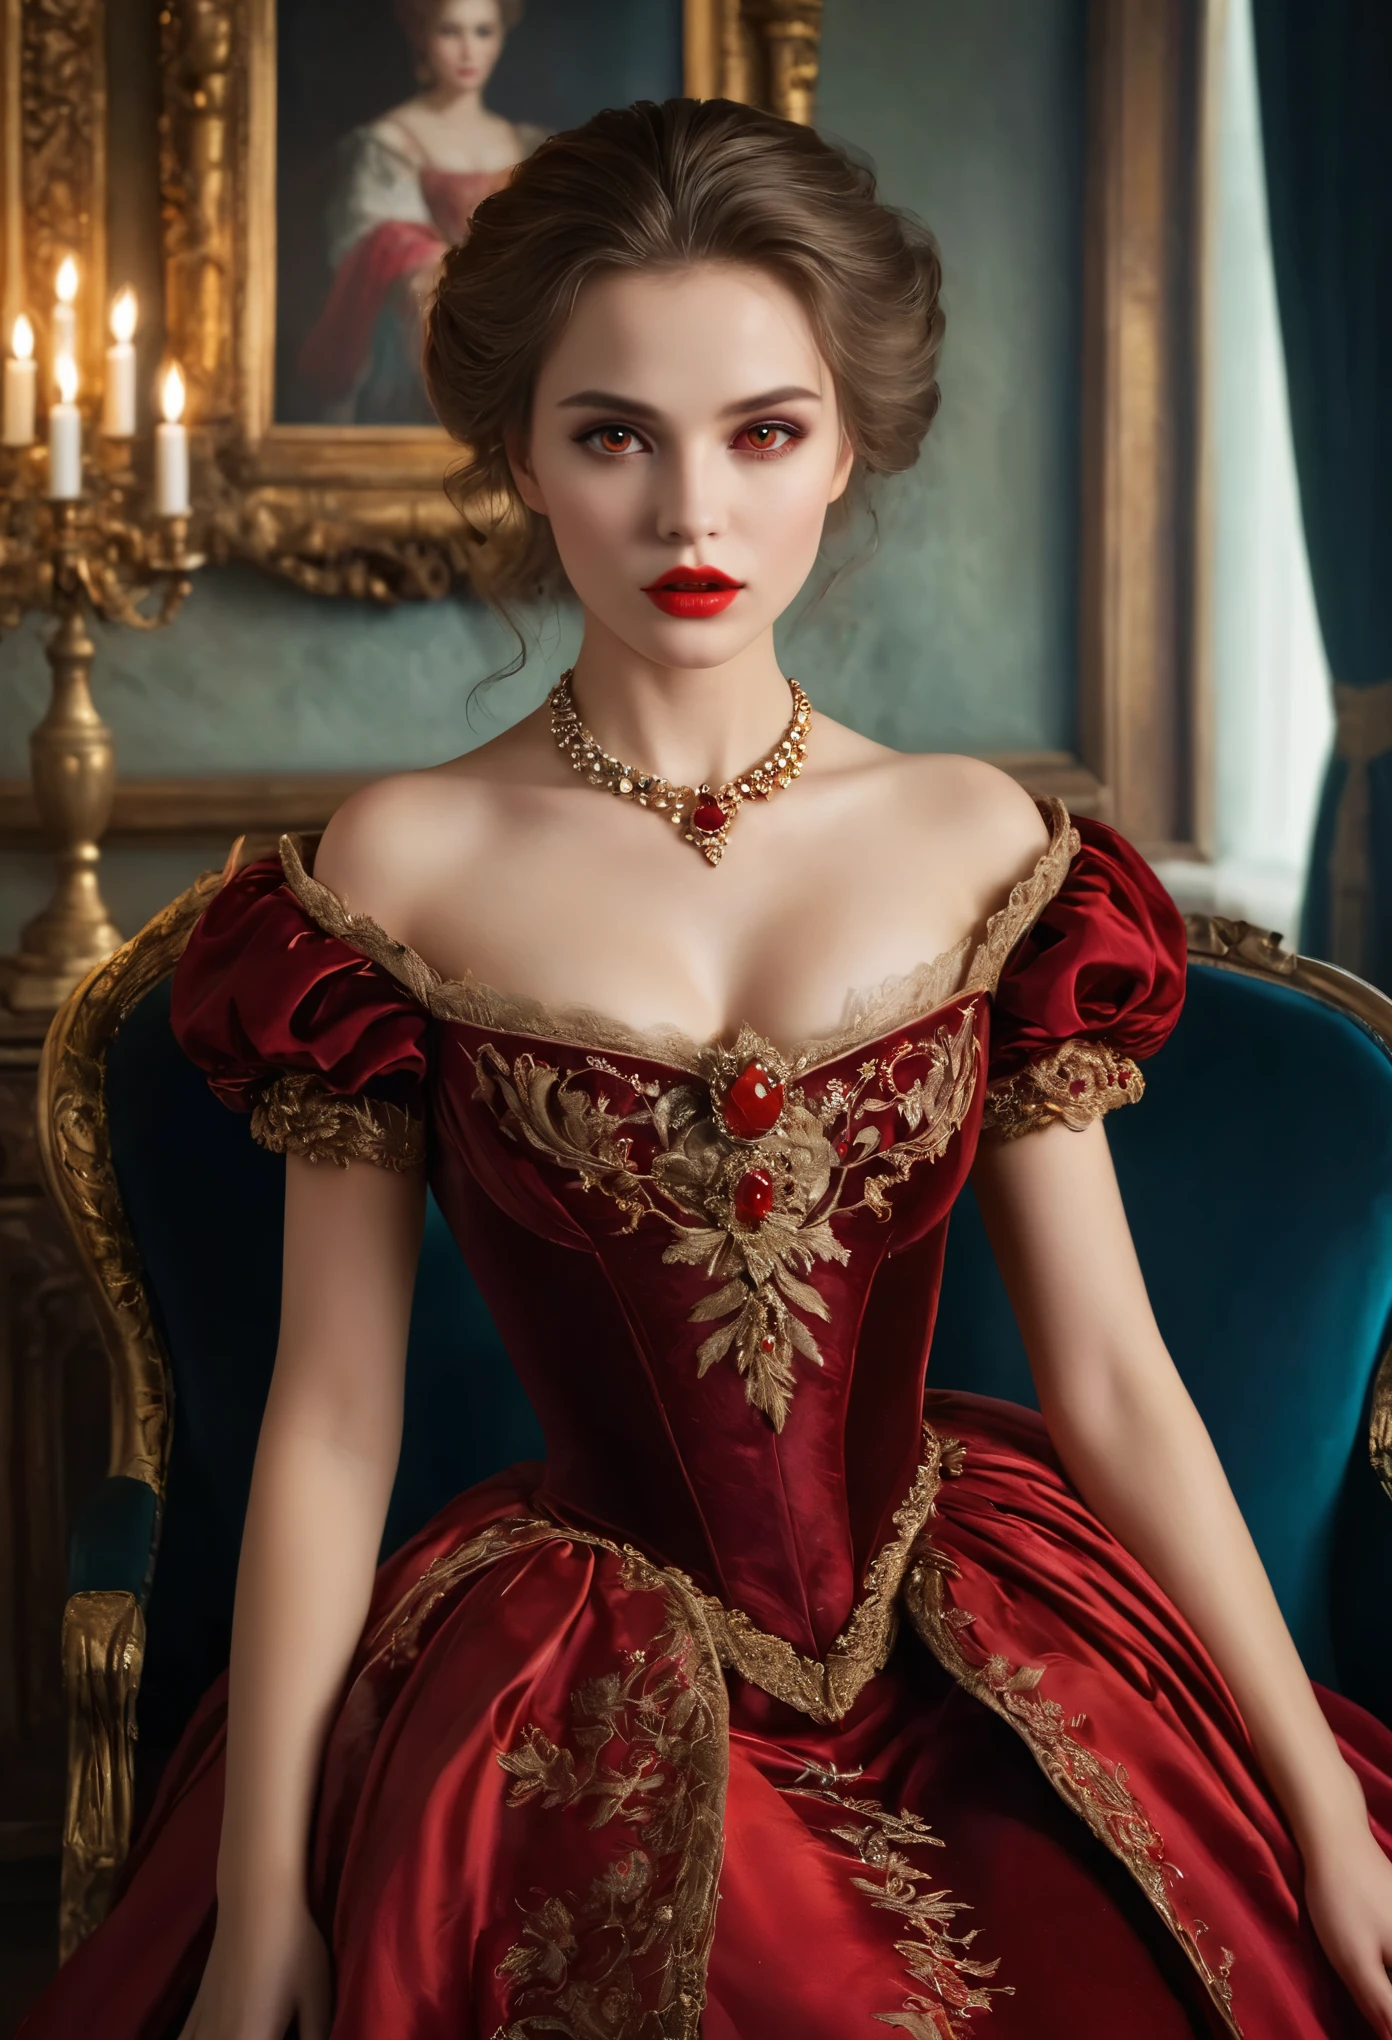 (haute résolution,chef-d&#39;œuvre:1.2),(Réaliste:1.37)Portrait d&#39;une fille vampire russe du XVIIIe siècle d&#39;une beauté inégalée. Elle a des yeux rouges captivants et des lèvres roses délicates. longs crocs, Le portrait est soigneusement dessiné dans les moindres détails., Capturez les nuances subtiles de ses traits. Elle porte une belle robe en soie, orné de dentelle complexe et de broderies délicates. Ce tableau parle du luxe de l&#39;époque., Rideaux de velours luxueux et meubles dorés en arrière-plan. L&#39;éclairage est doux et diffus, Mettez en valeur la fille&#39;sa beauté gracieuse. Les couleurs sont vives et riches, Créez des expériences visuelles convaincantes. Ce portrait est peint dans le style du portrait classique., Rappelant les œuvres d&#39;artistes célèbres de l&#39;époque. Il respire l’élégance, la grâce, sophistication. longues griffes acérées, (yeux cramoisis:1.4), Yeux rouge feu, (Des crocs acérés visibles à travers l&#39;espace entre ses lèvres:1.8), Il y a une marque de morsure sur le cou.２Il y a deux trous